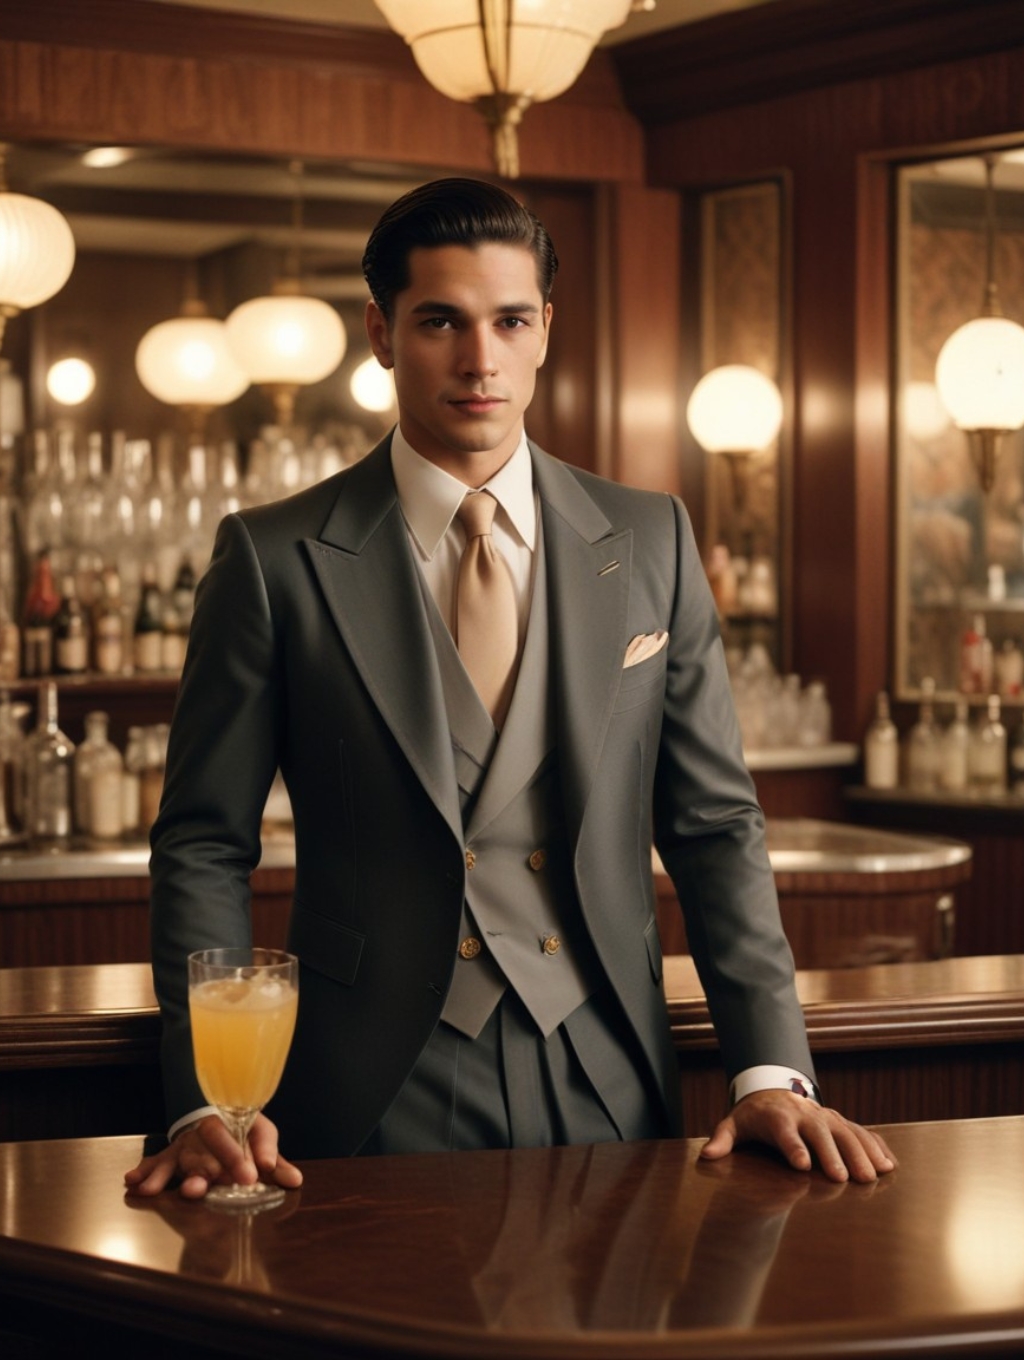 Art Deco Cocktail Menu Men: Image Frames & Headshots-Theme:2